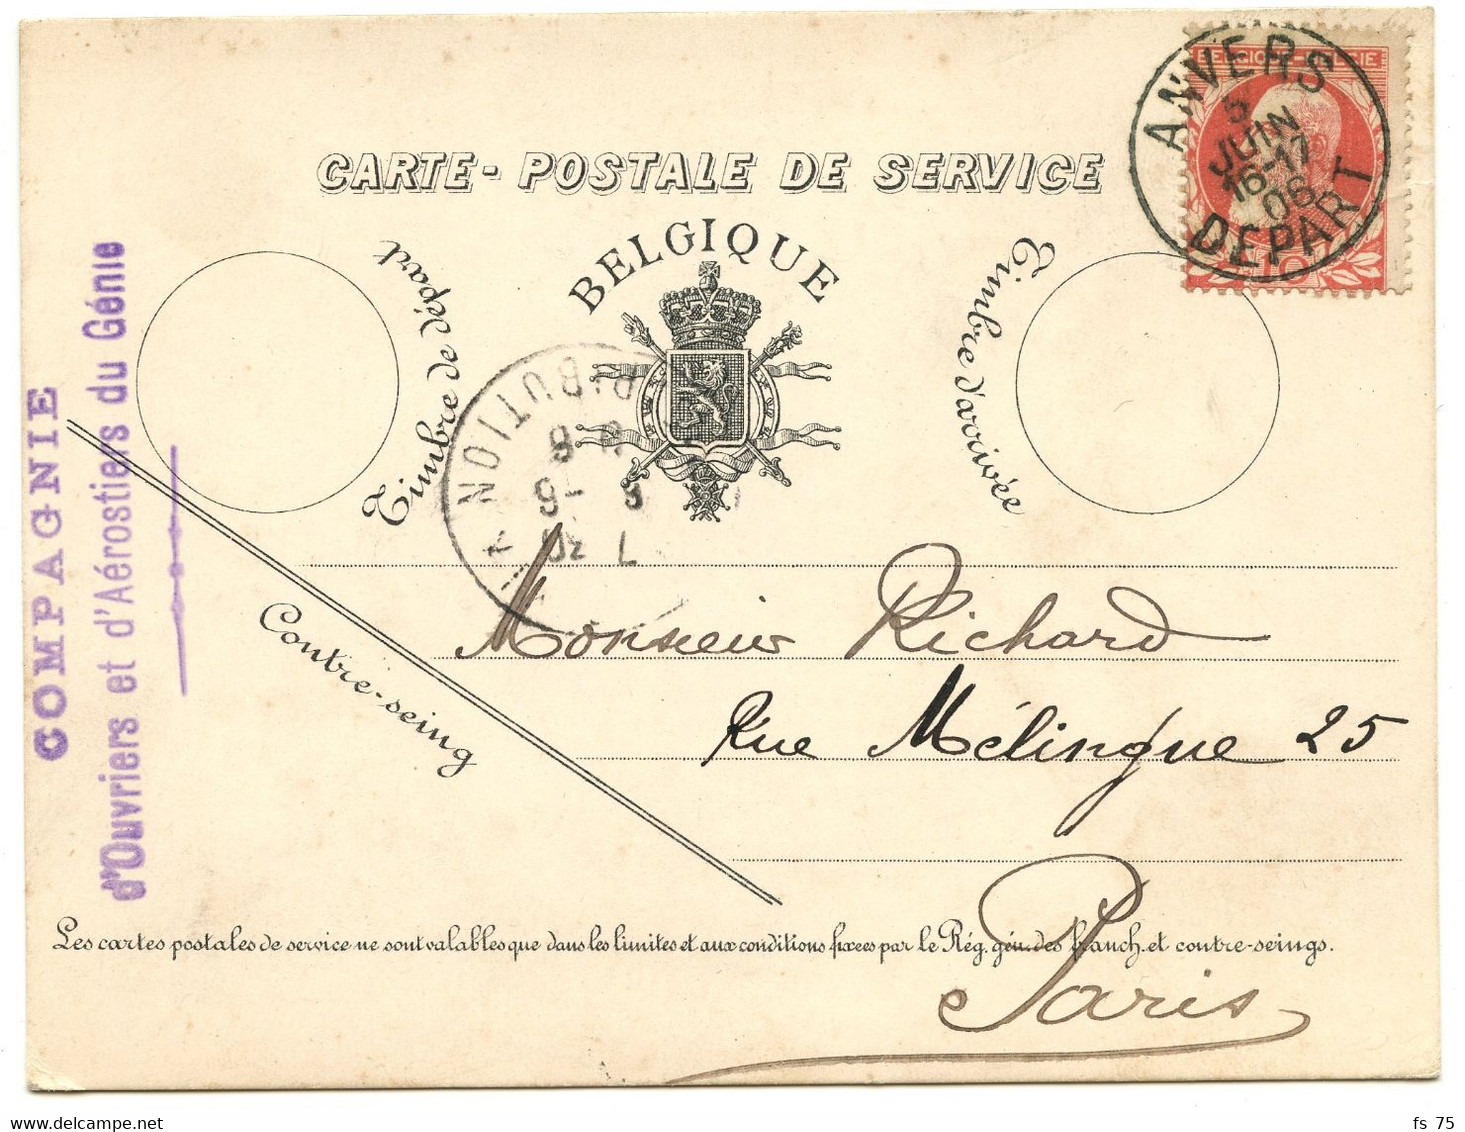 BELGIQUE - COB 74 SIMPLE CERCLE ANVERS DEPART SUR CARTE POSTALE DE SERVICE POUR LA FRANCE, 1906 - Cartes Postales 1871-1909